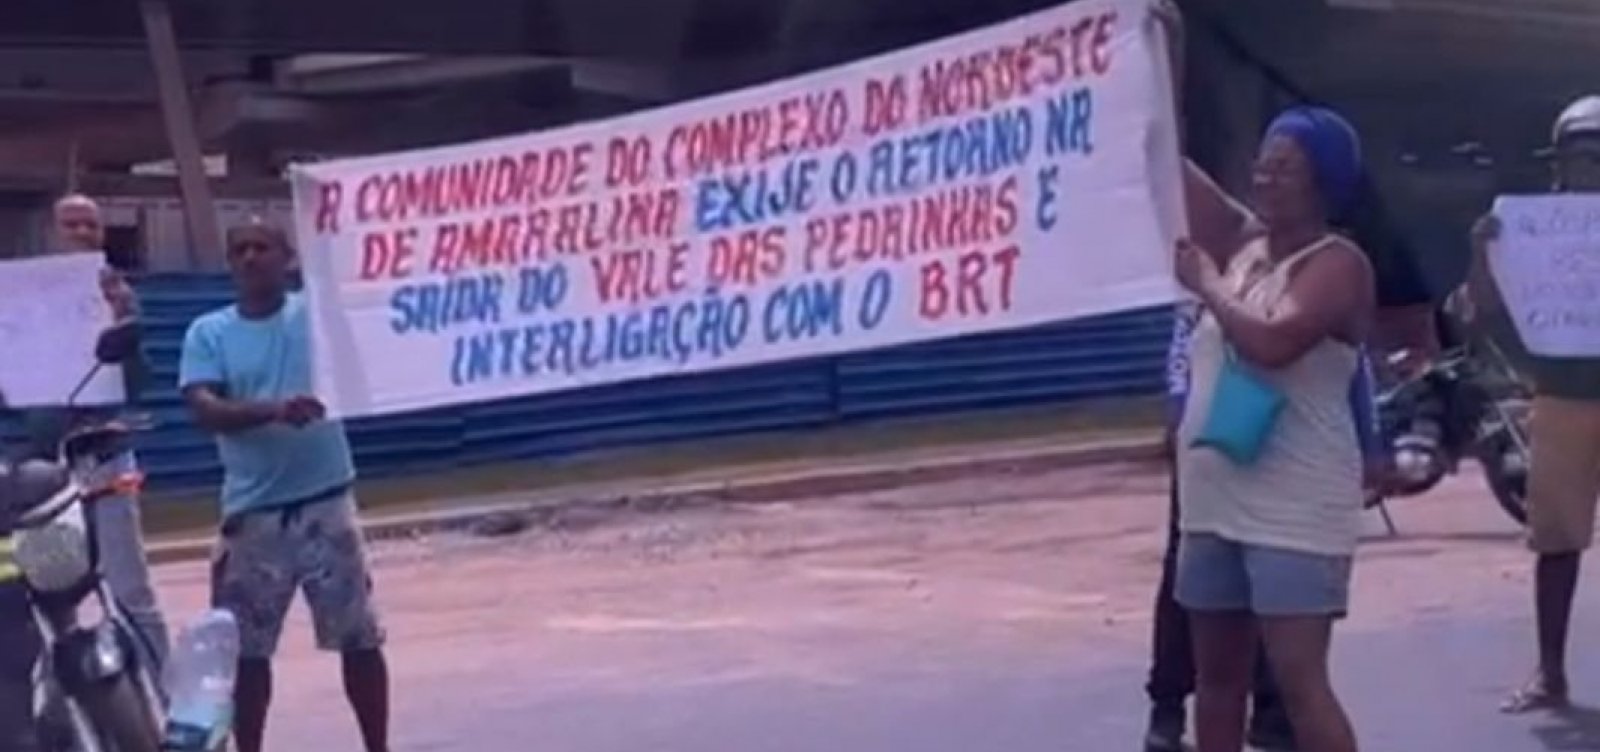 Moradores do Nordeste de Amaralina realizaram manifestação pedindo interligação do bairro com o BR